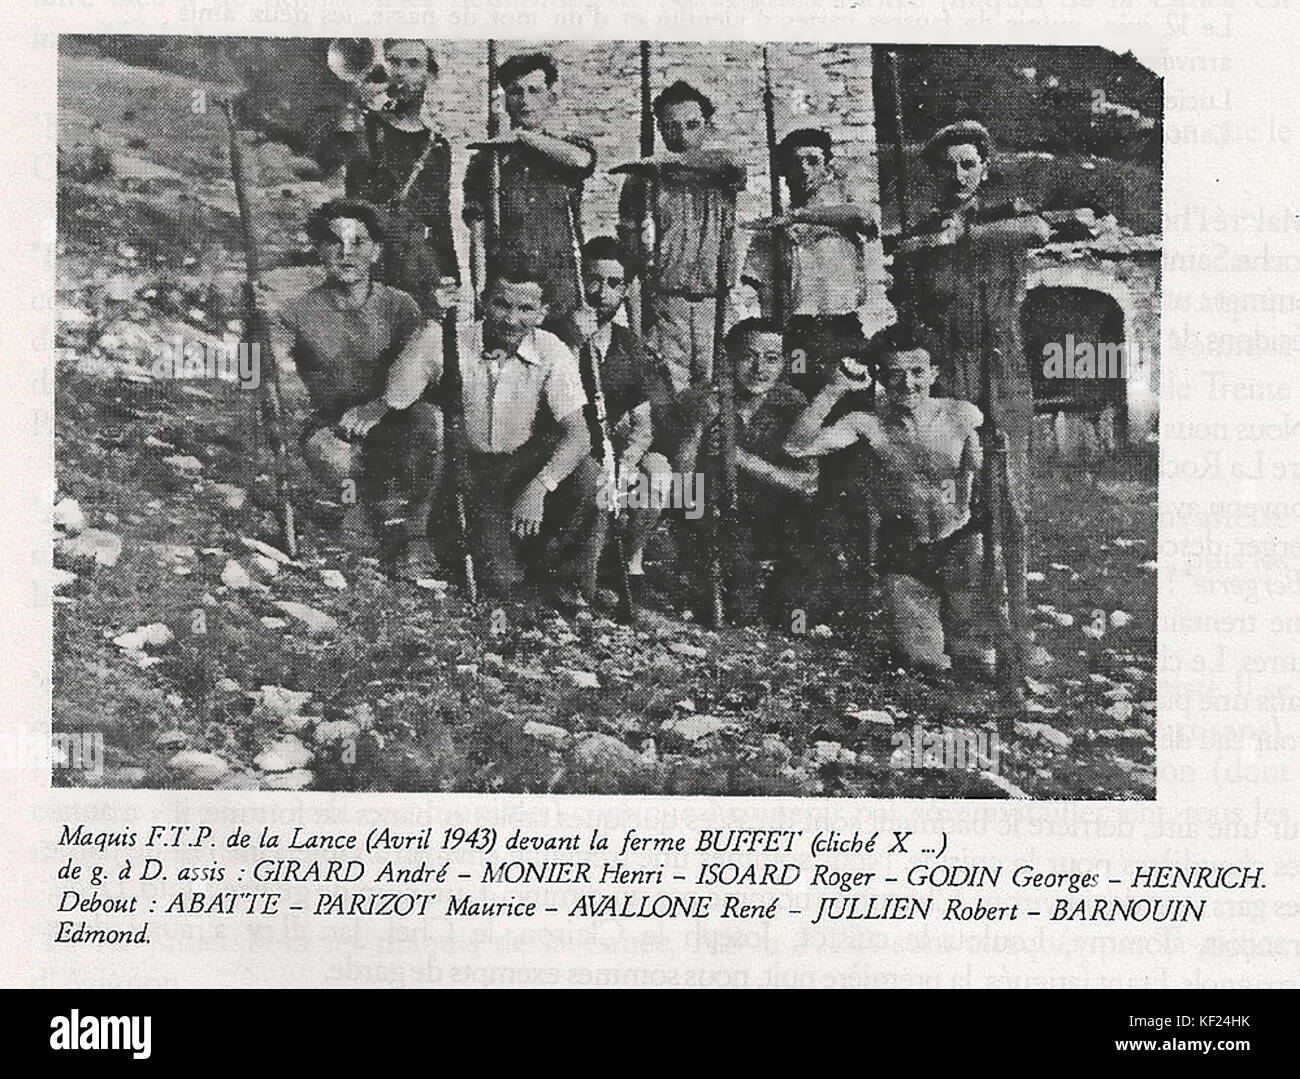 Maquis de la Lance 1943 Stock Photo